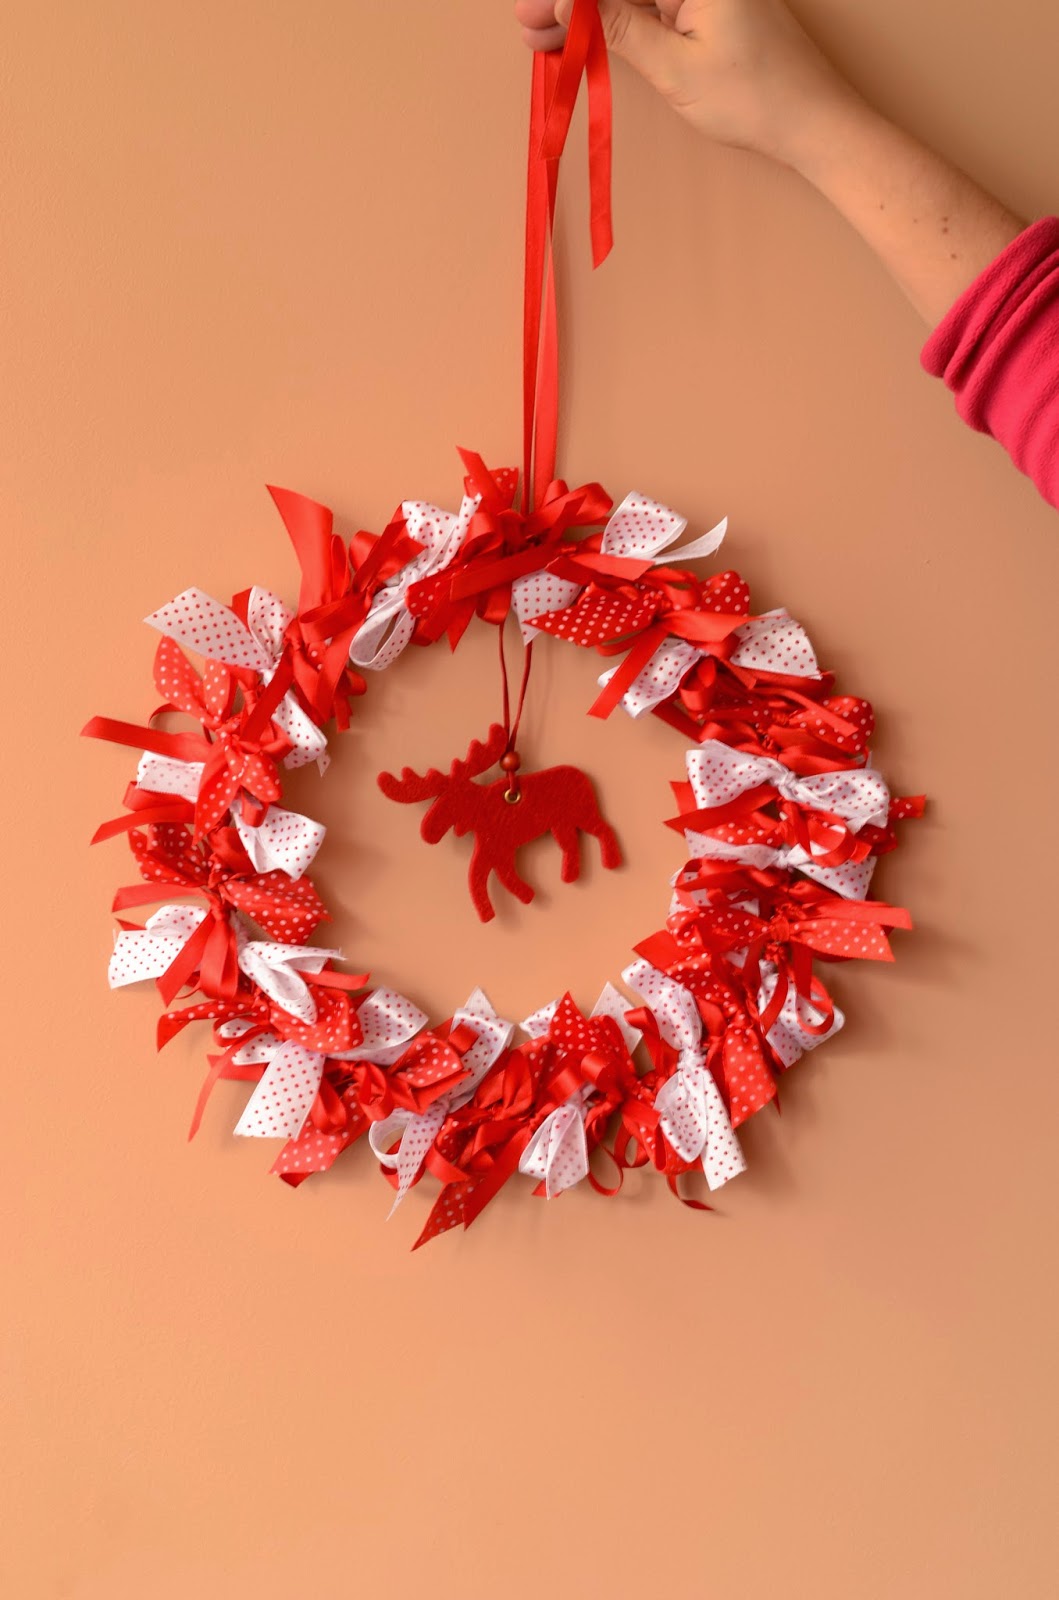 Simple Hand Made Christmas wreath - Простой новогодний веночек из лент от Ольги Байчуриной